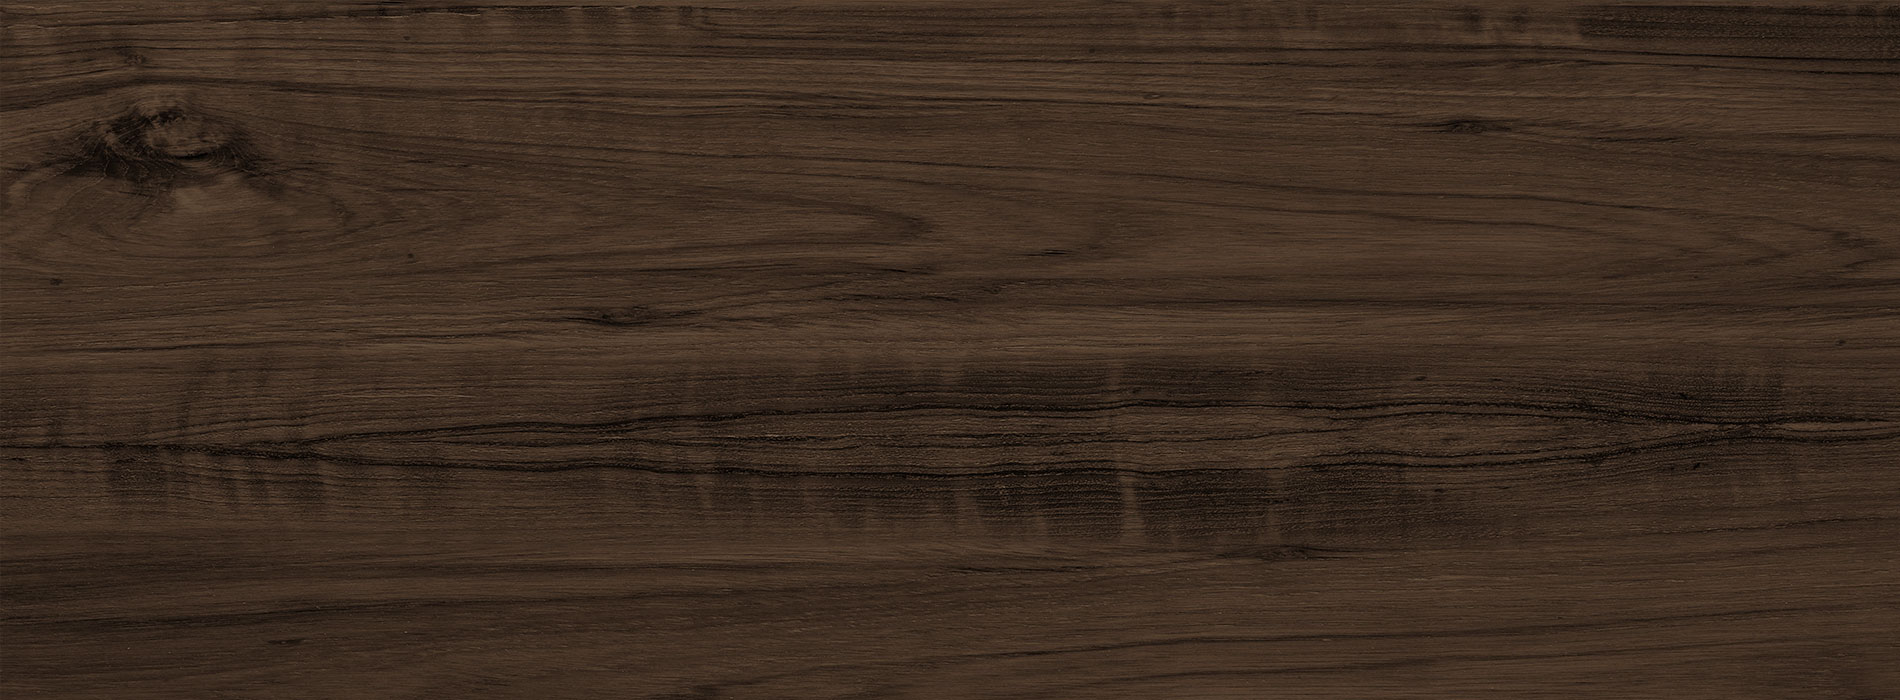 Dark wood texture background